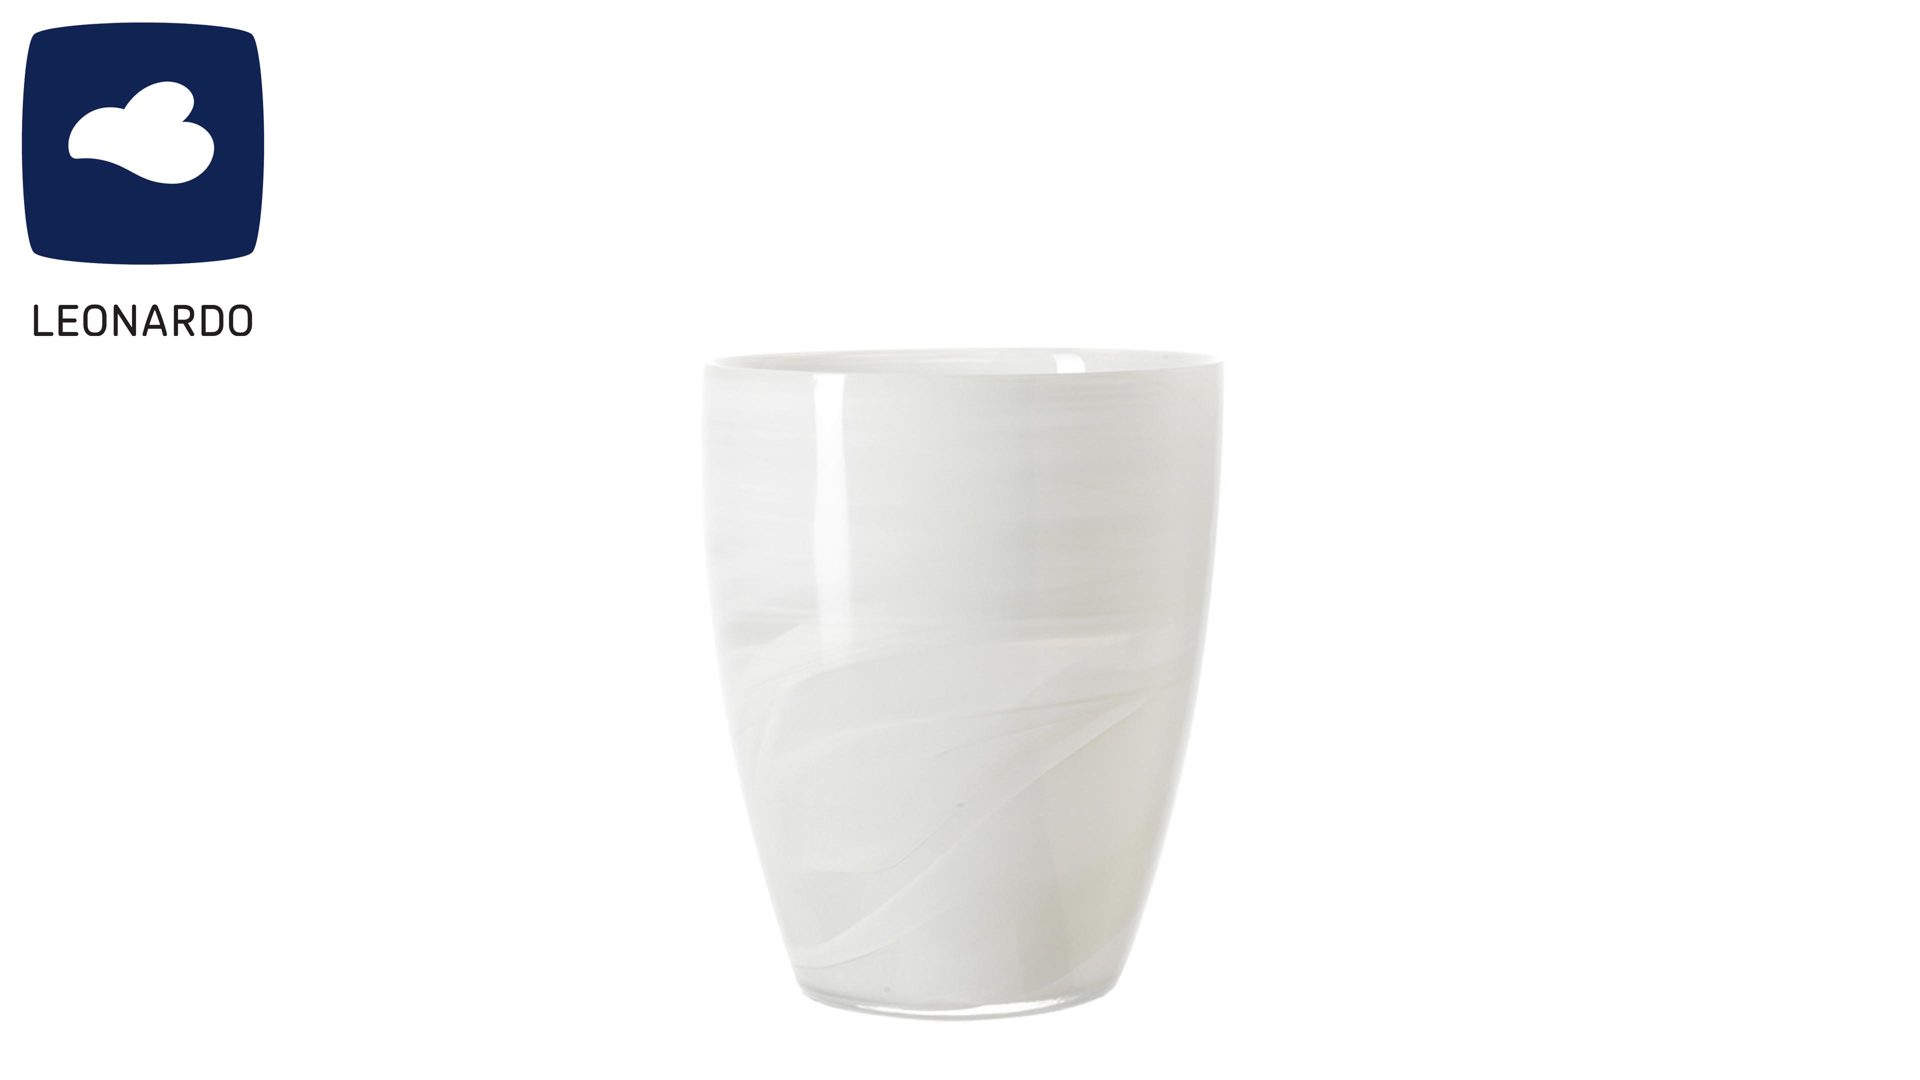 Windlicht Leonardo | glaskoch aus Glas in Weiß LEONARDO Vase & Windlicht Alabastro weiß marmoriertes Glas - ca. 19 cm hoch